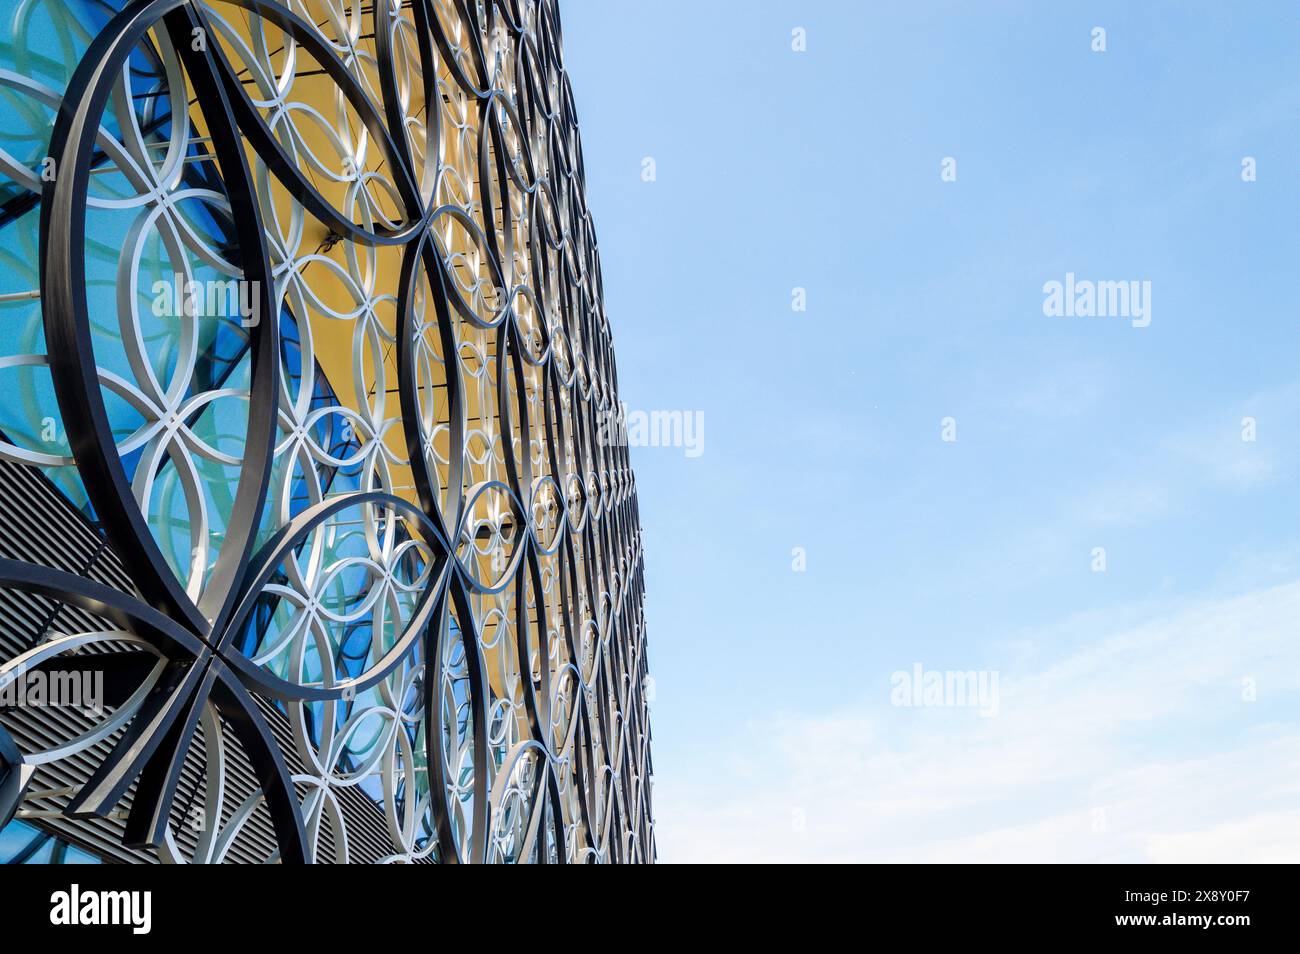 Moderne architektonische Fassade der Library of Birmingham mit komplexen geometrischen Mustern und einer lebendigen Glasfassade. Stockfoto